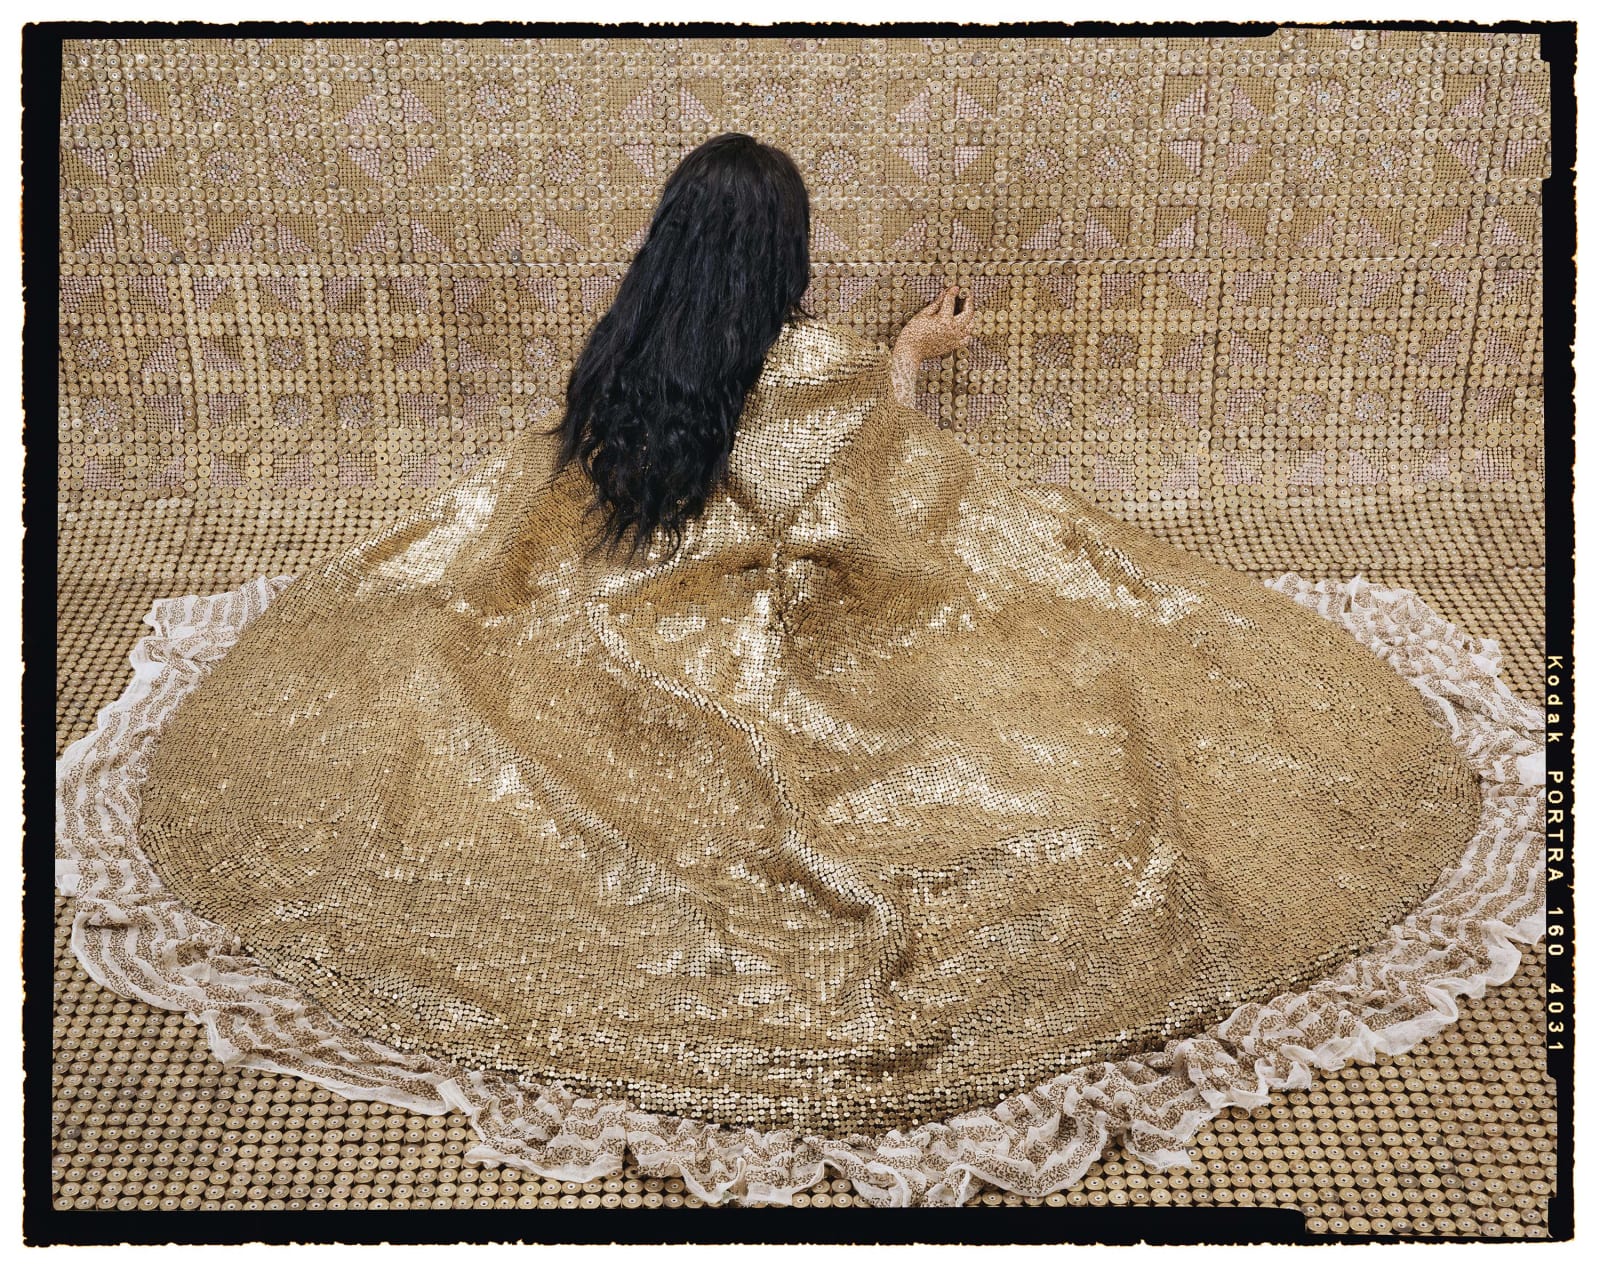 Lalla Essaydi Bullets Revisited #20, 2013, Woman wearing golden cloak facing golden wall